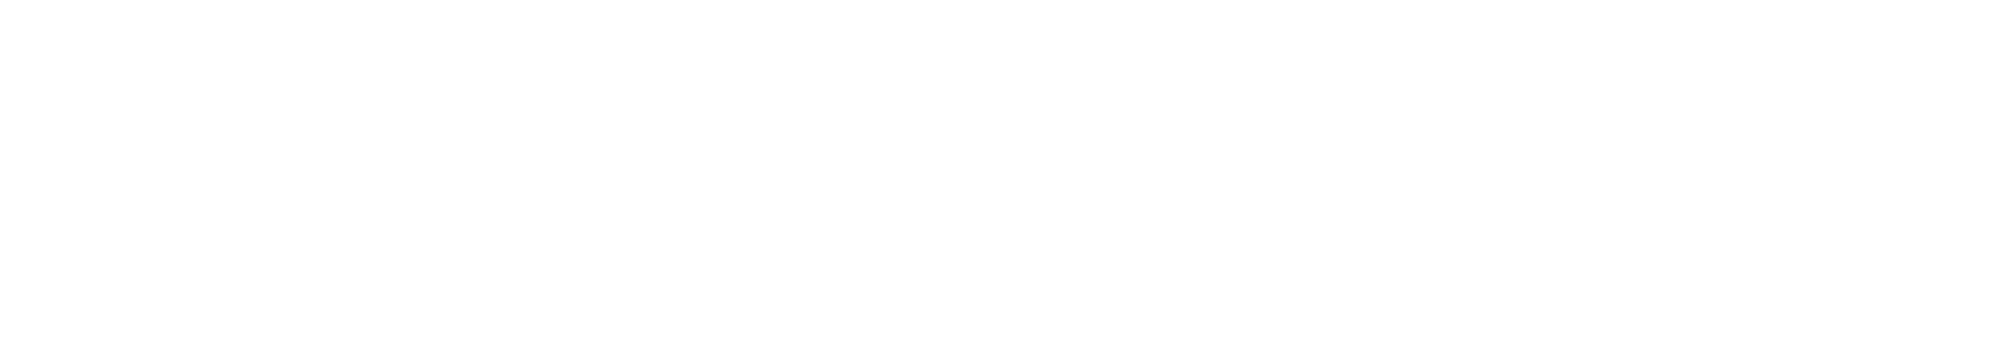 _bnr_recruit